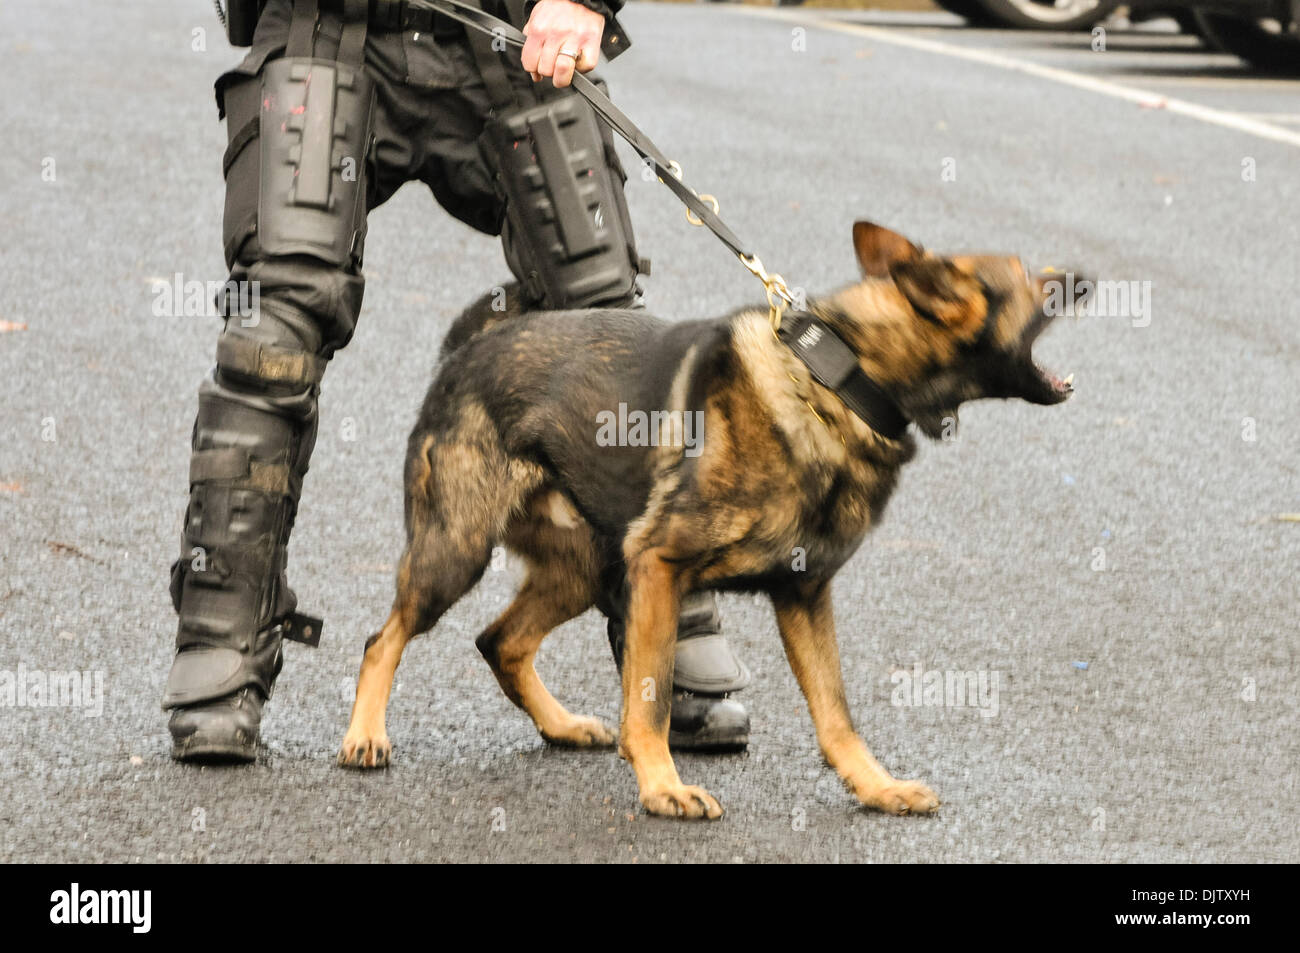 Belfast, Nordirland 30. November 2013 - Polizei-Attacke, die Hunde in Vorbereitung im Störungsfall herausgearbeitet werden. Bildnachweis: Stephen Barnes/Alamy Live-Nachrichten Stockfoto